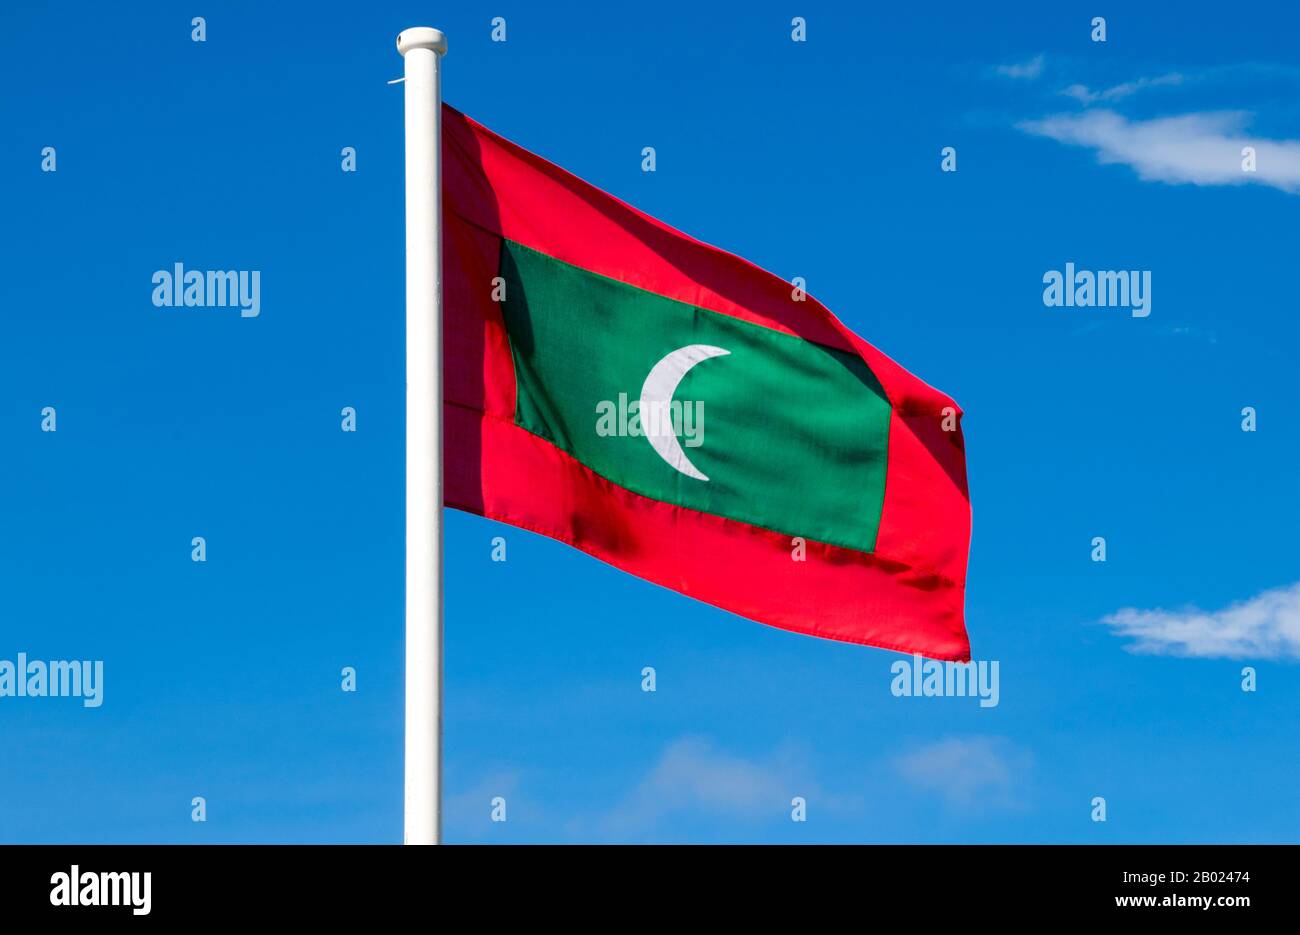 Maldive: Bandiera delle Maldive, atollo di Addu (atollo di Seenu). La nazione più piccola e meno conosciuta dell'Asia, la Repubblica delle Maldive, si trova sparsi da nord a sud attraverso un raggio di 750 chilometri dell'Oceano Indiano, 500 chilometri a sud-ovest dello Sri Lanka. Più di 1000 isole, insieme a innumerevoli banchi e scogliere, sono raggruppate in una catena di diciannove atolli che si estende da un punto a ovest di Colombo a poco a sud dell'equatore. Gli atolli, formati da grandi anelli di corallo basati sulla cresta del sottomarino Laccadive-Chagos, variano notevolmente nelle dimensioni. Foto Stock